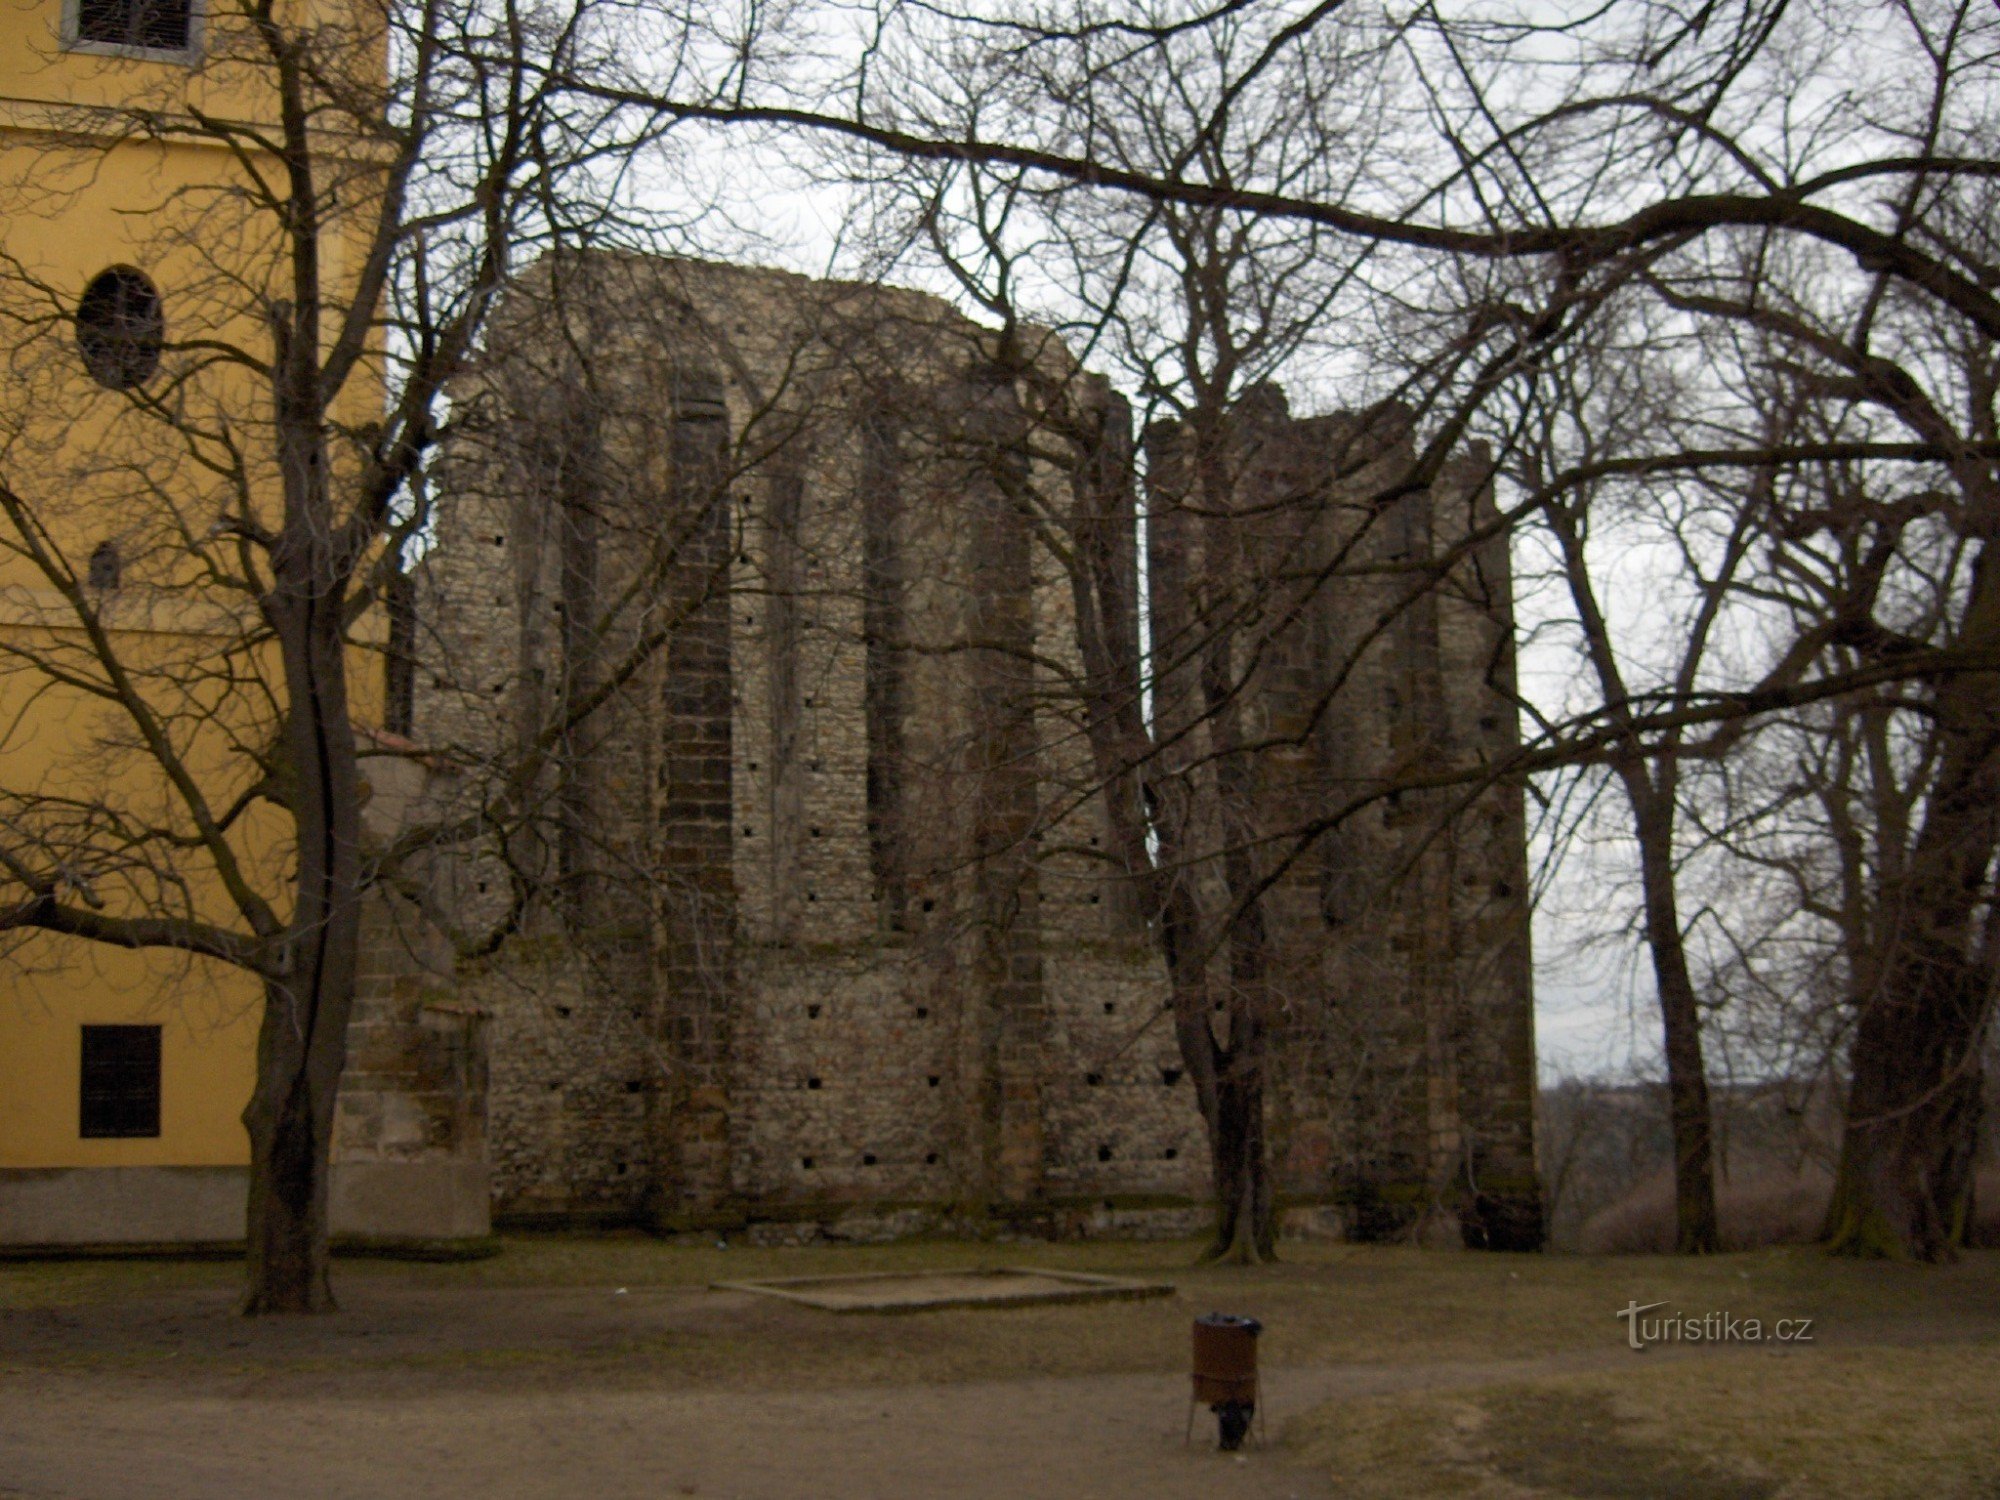 Panenský Týnec, ngôi đền chưa được cung cấp